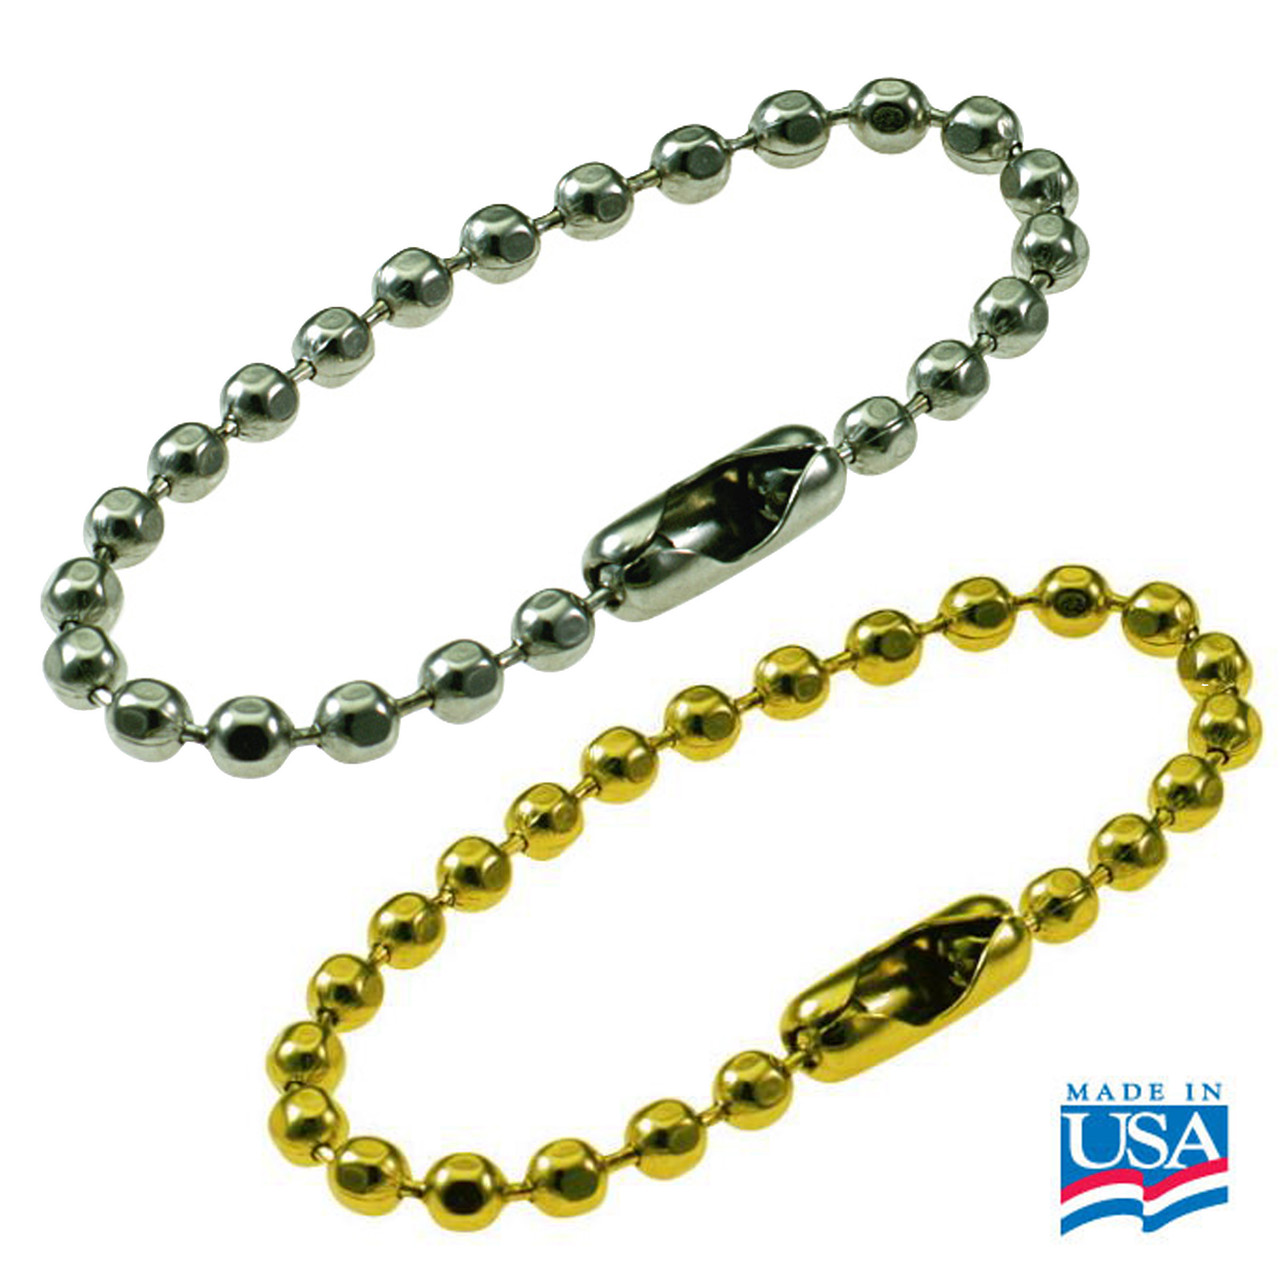 Ball Chain 4-1/2 Inch Length (USA Made)